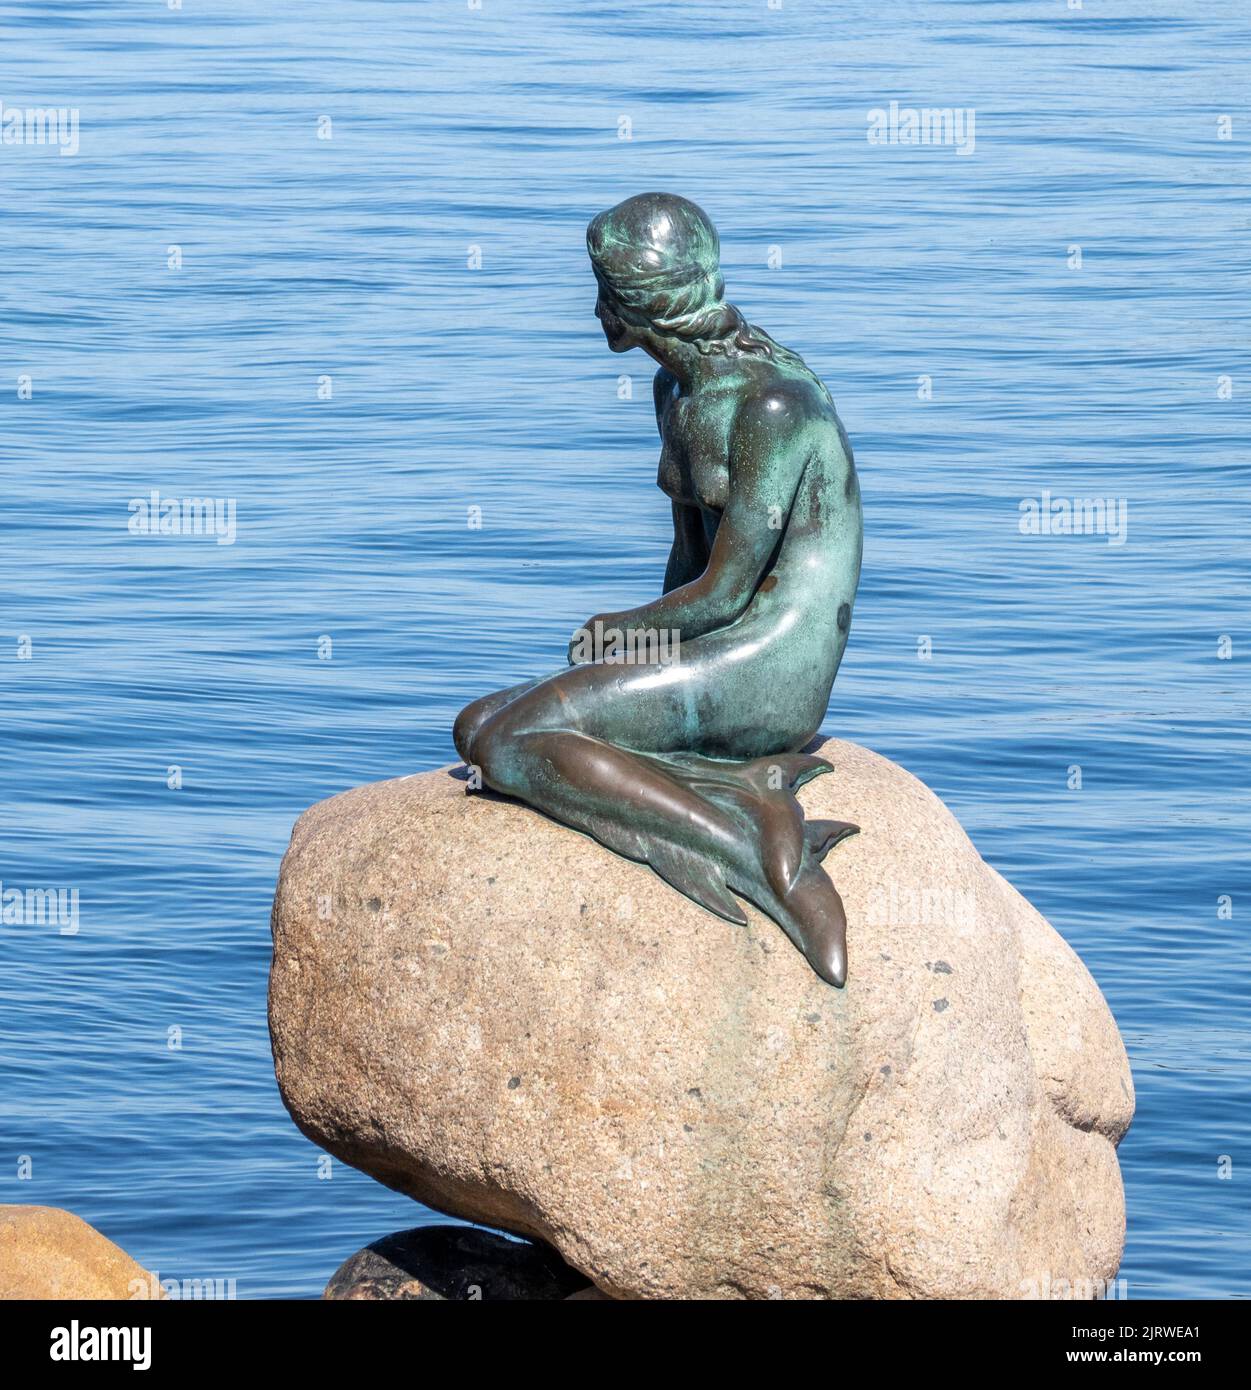 Scultura in bronzo della Sirenetta di Edvard Eriksen sul lungomare di Langelinie vicino al porto di Copenaghen, Danimarca Foto Stock